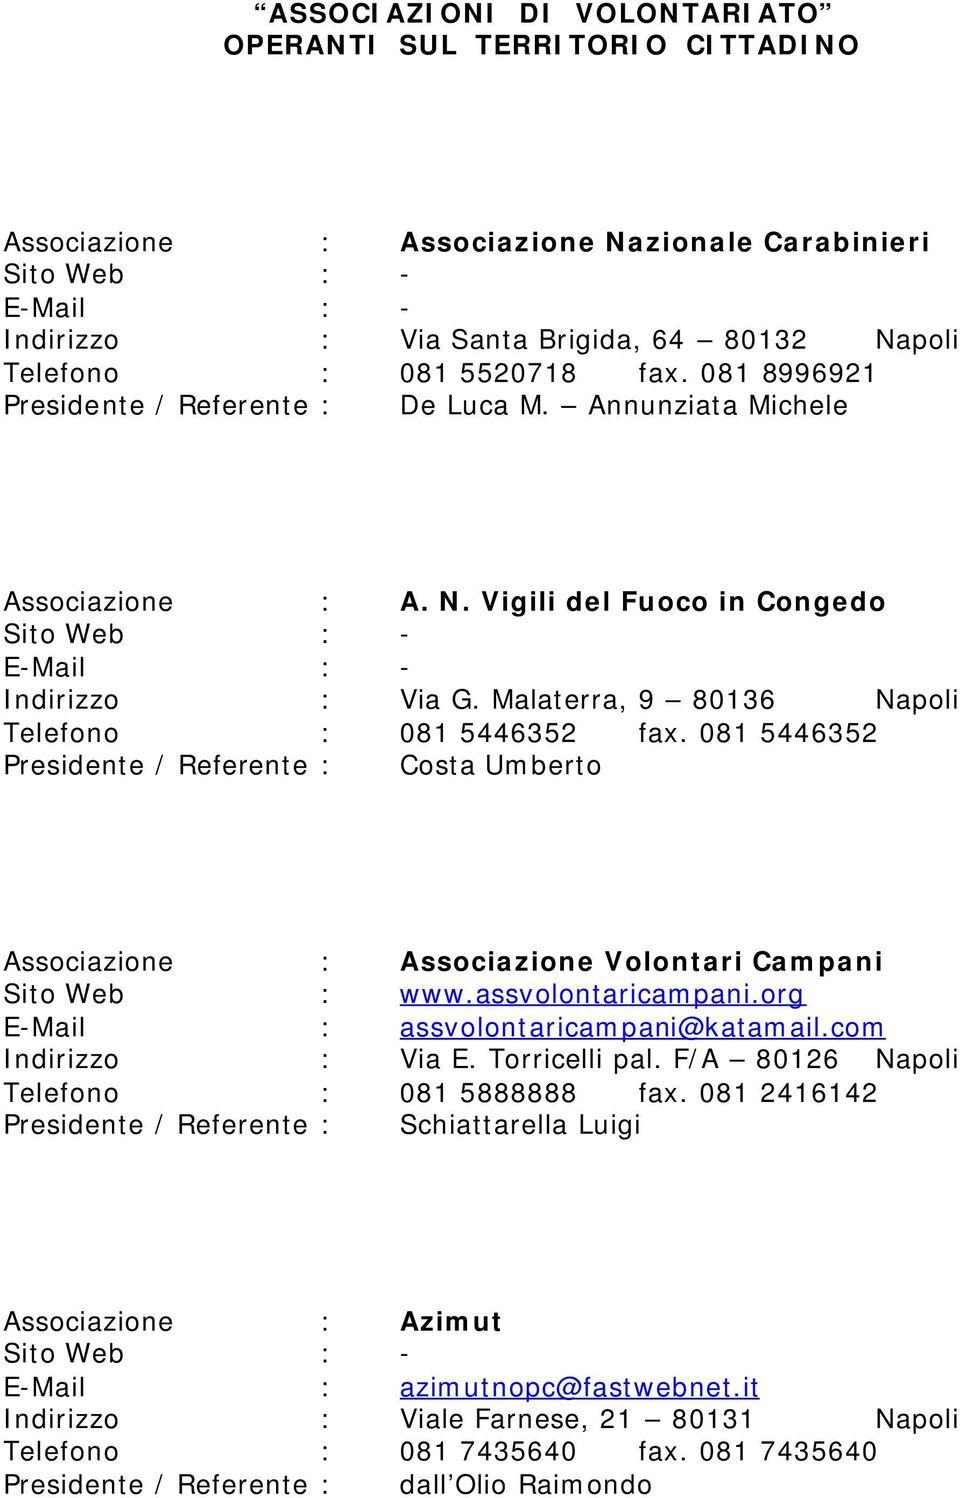 081 5446352 Presidente / Referente : Costa Umberto Associazione : Associazione Volontari Campani Sito Web : www.assvolontaricampani.org E-Mail : assvolontaricampani@katamail.com Indirizzo : Via E.